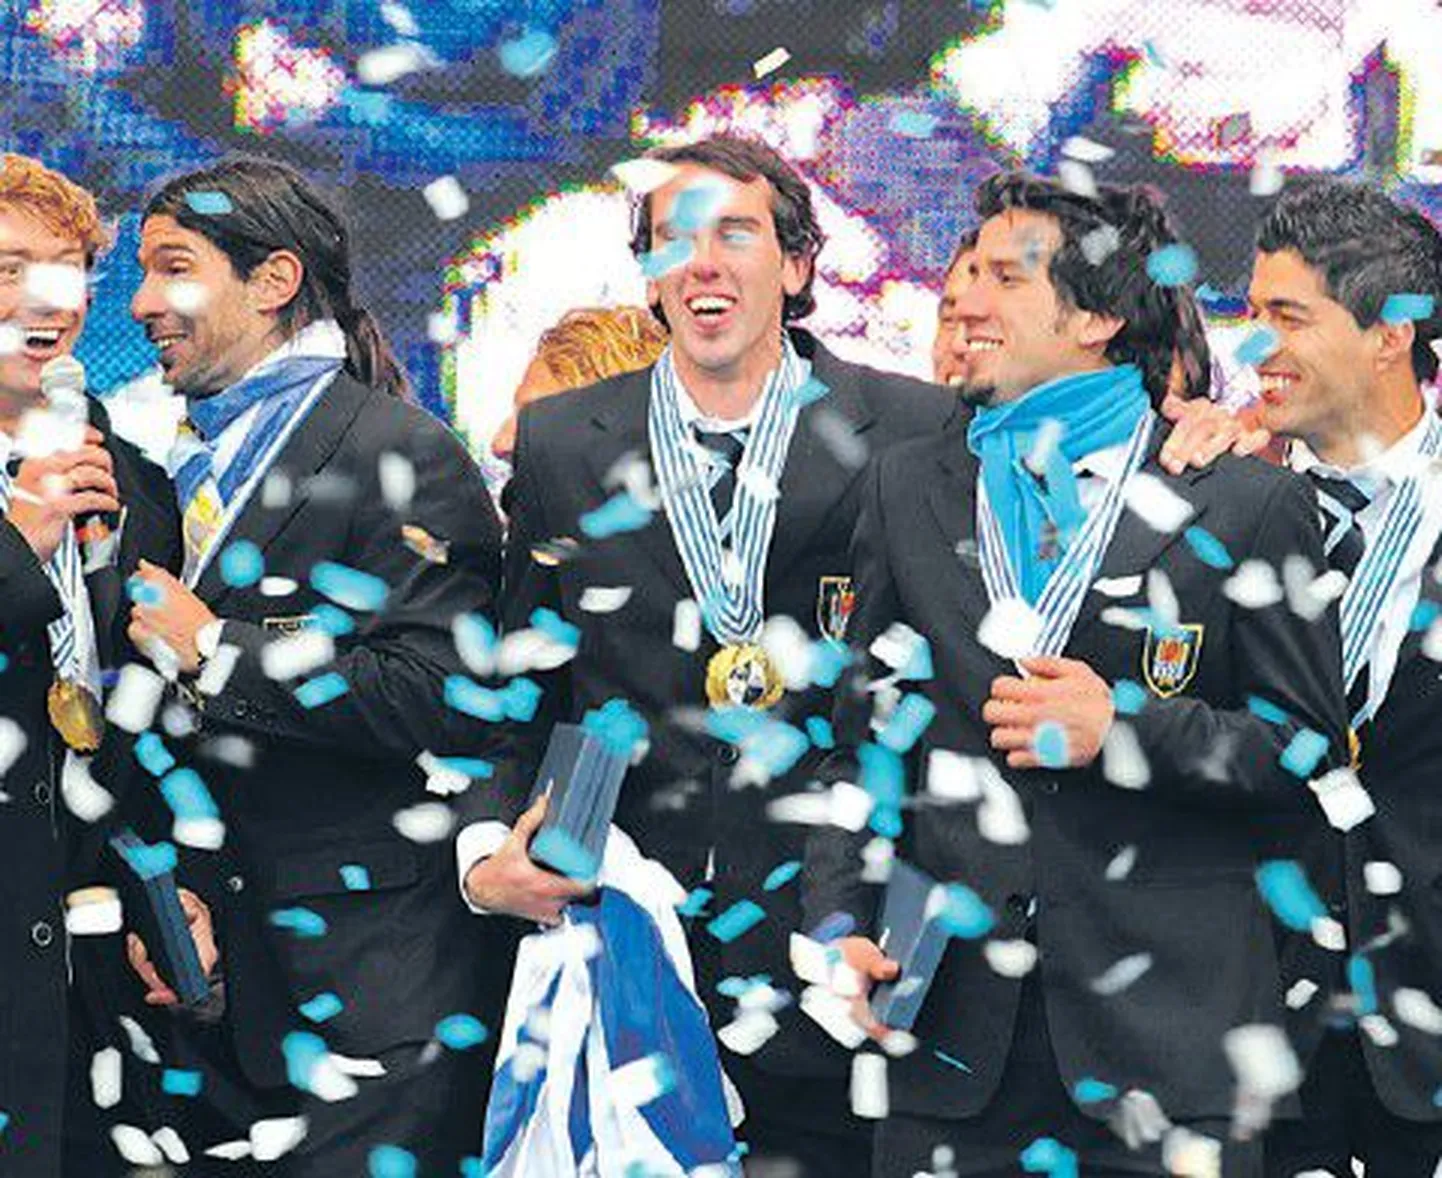 На чемпионате мира 2010 года в ЮАР сборная Уругвая заняла четвертое место и стала лучшей командой Южной Америки, обойдя Аргентину, Бразилию и Чили.